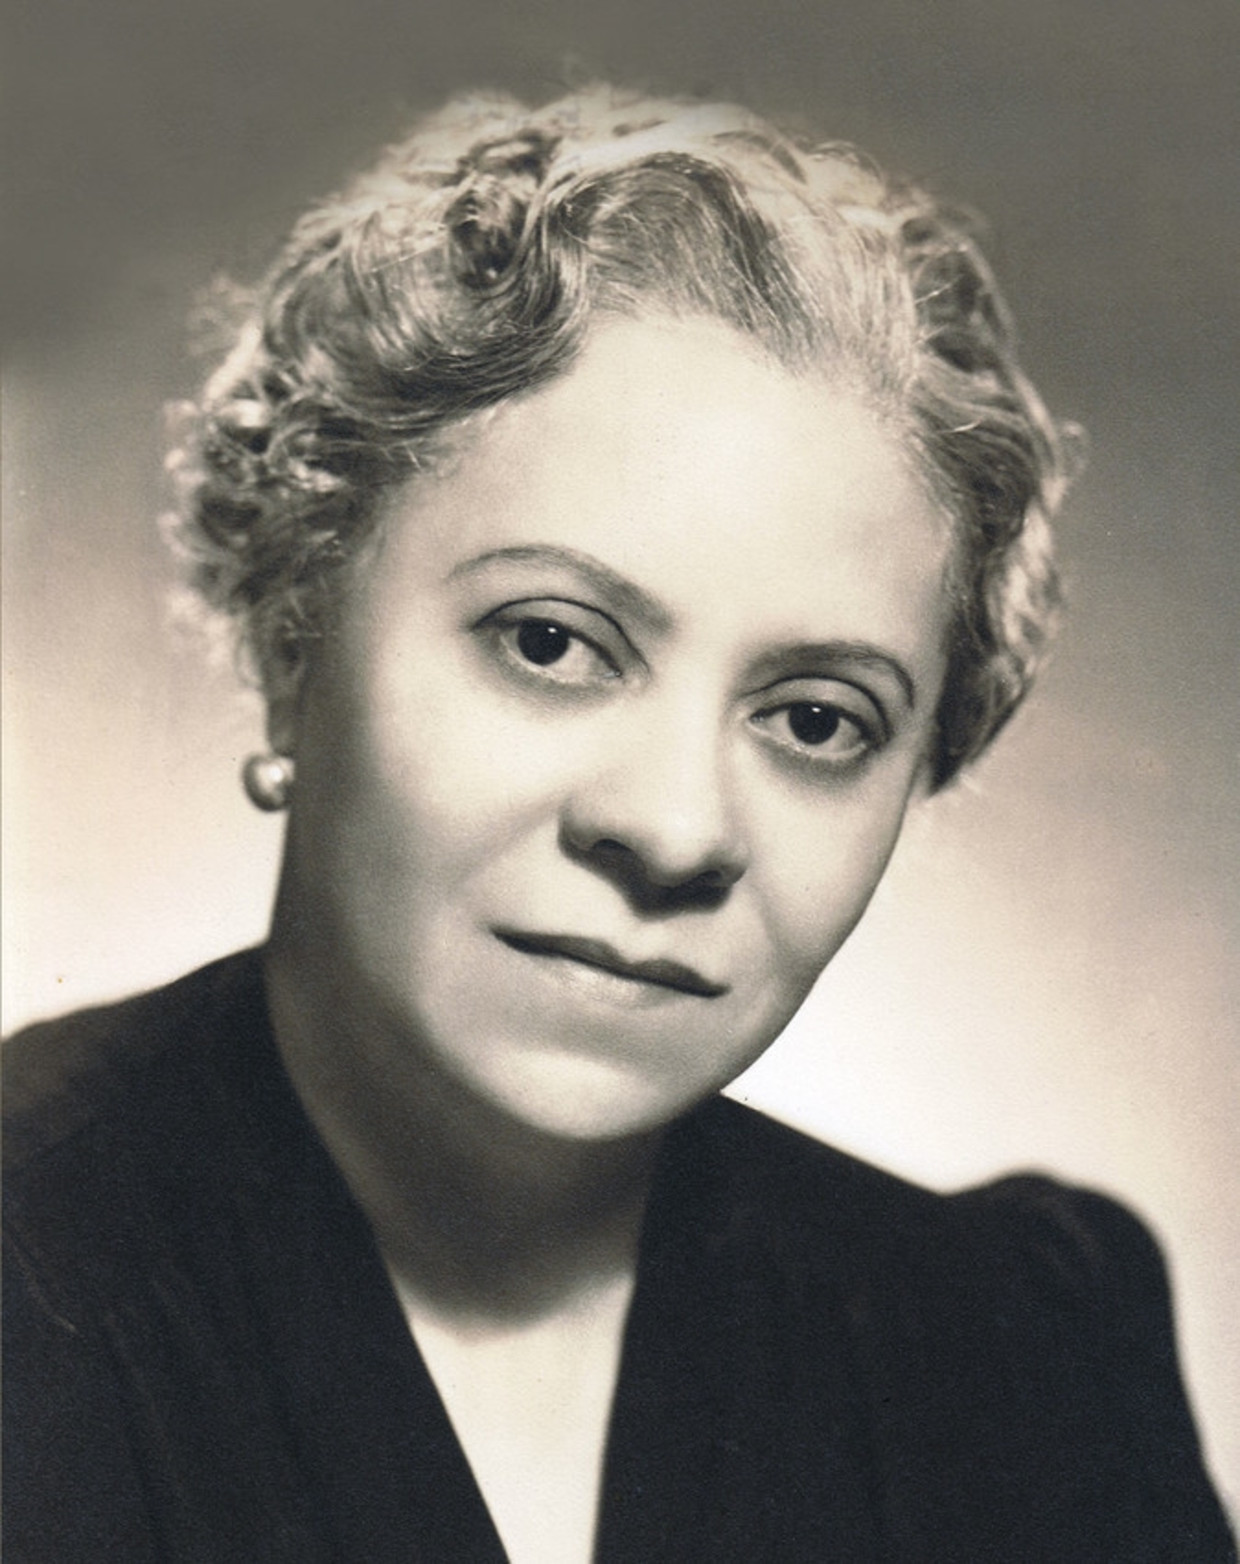 Florence Price was de eerste zwarte vrouw wier werk door een van de grote Amerikaanse orkesten, het Chicago Symphony, was uitgevoerd, in 1933. Beeld 